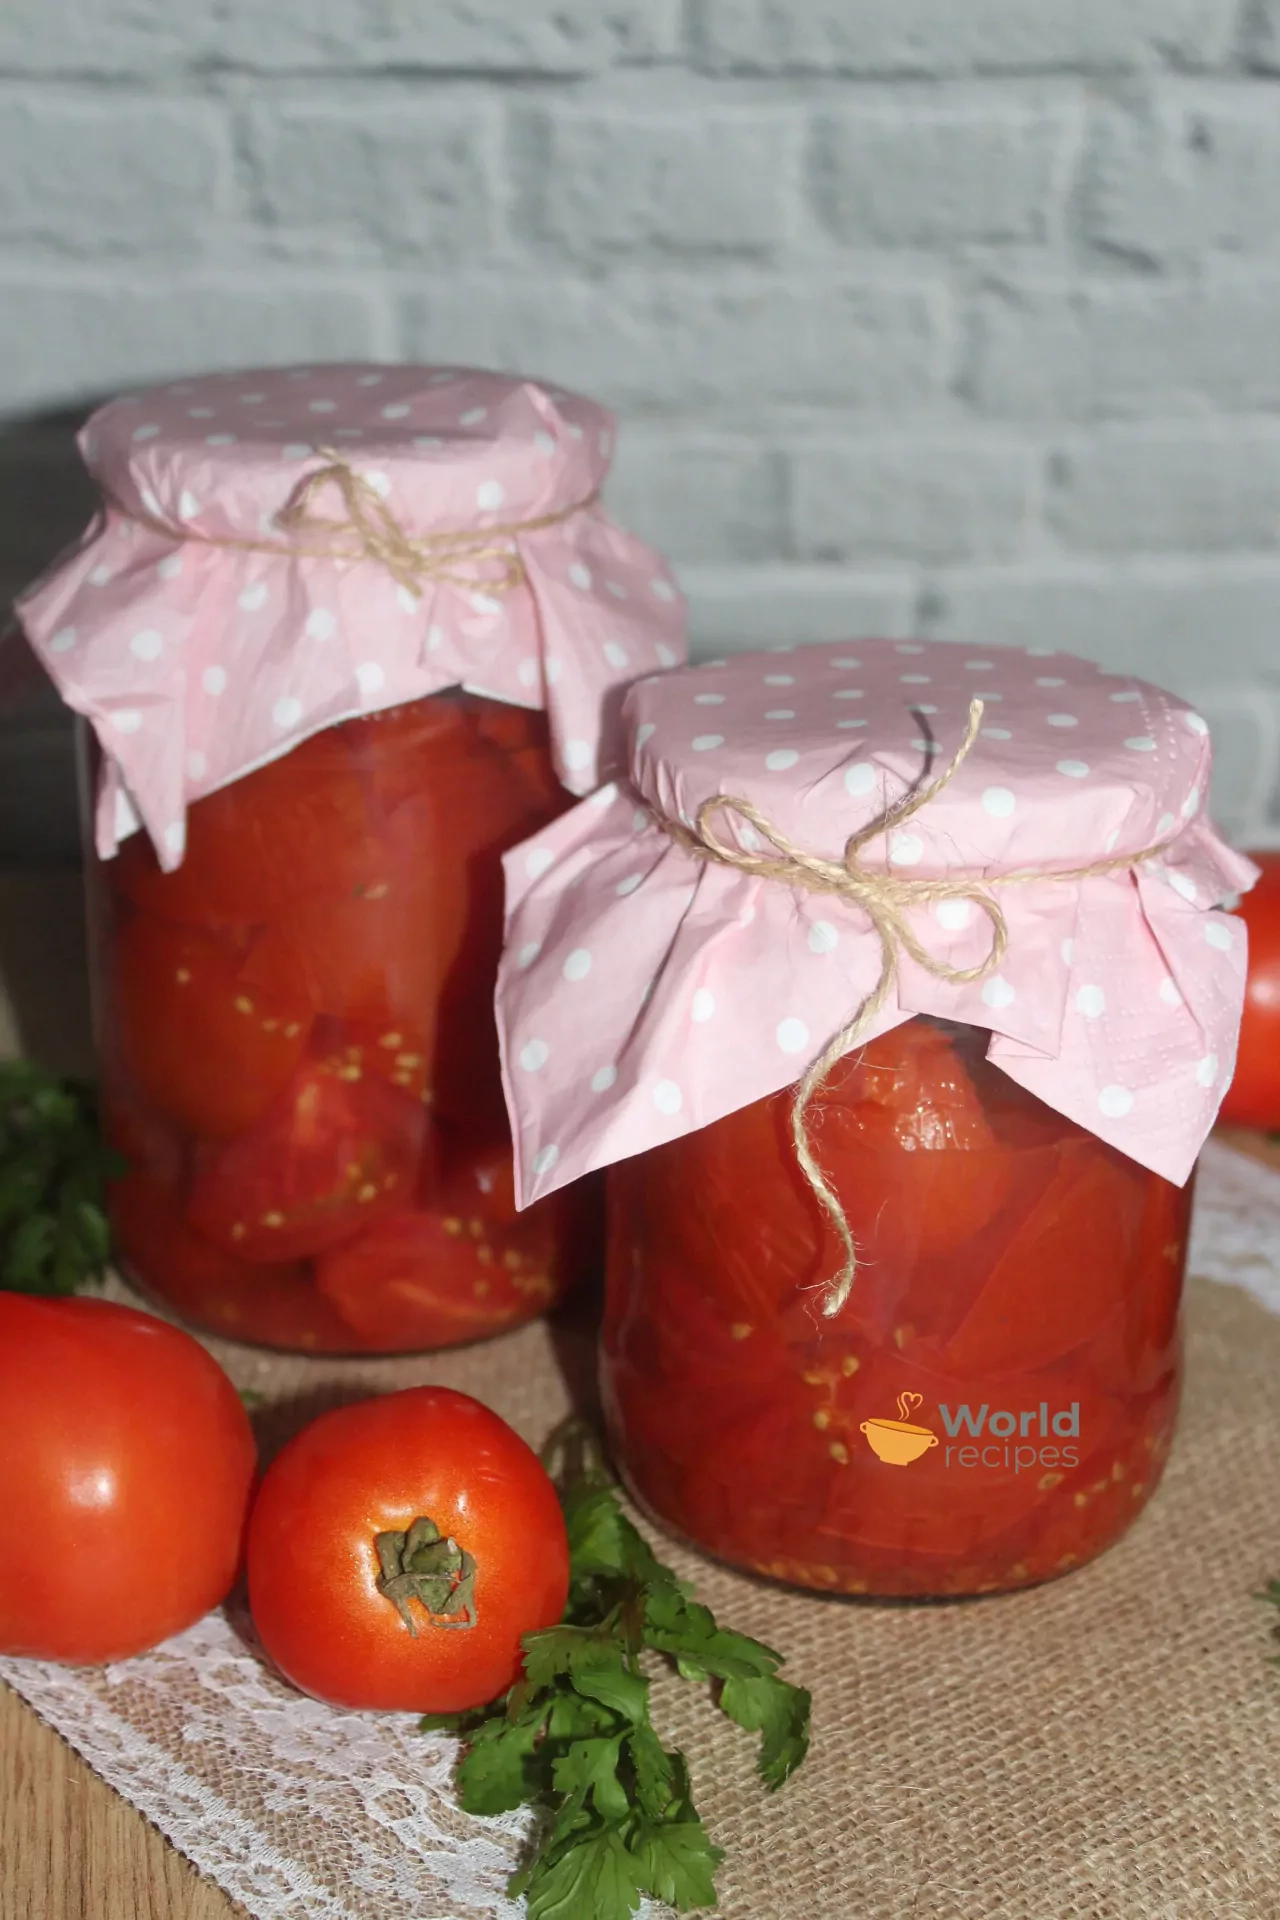 Savo sultyse marinuoti pomidorai be odelių, su cukrumi ir druska